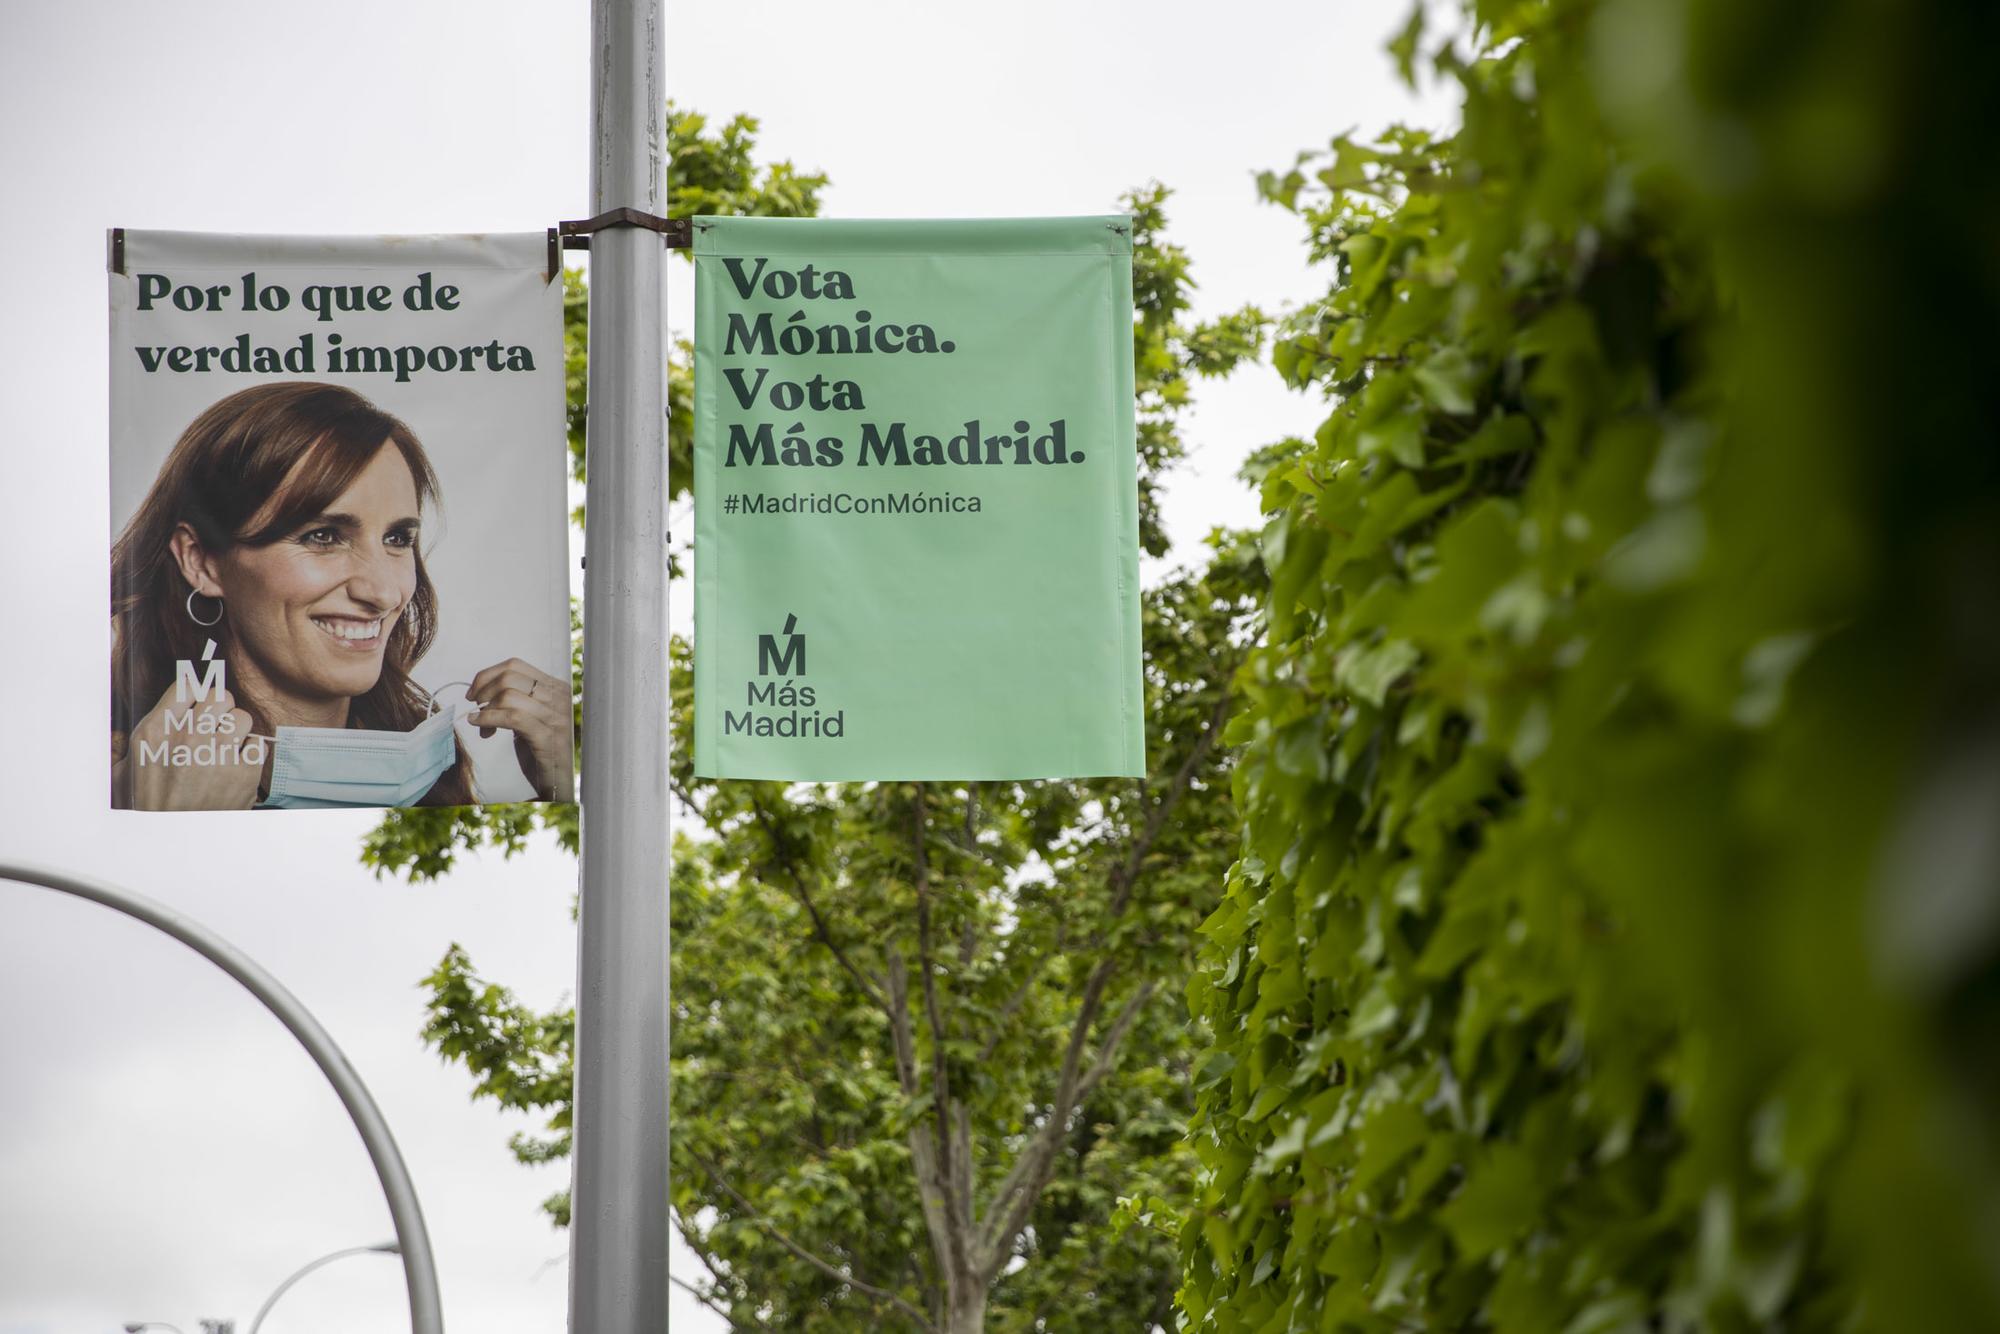 Campaña electoral Mas Madrid